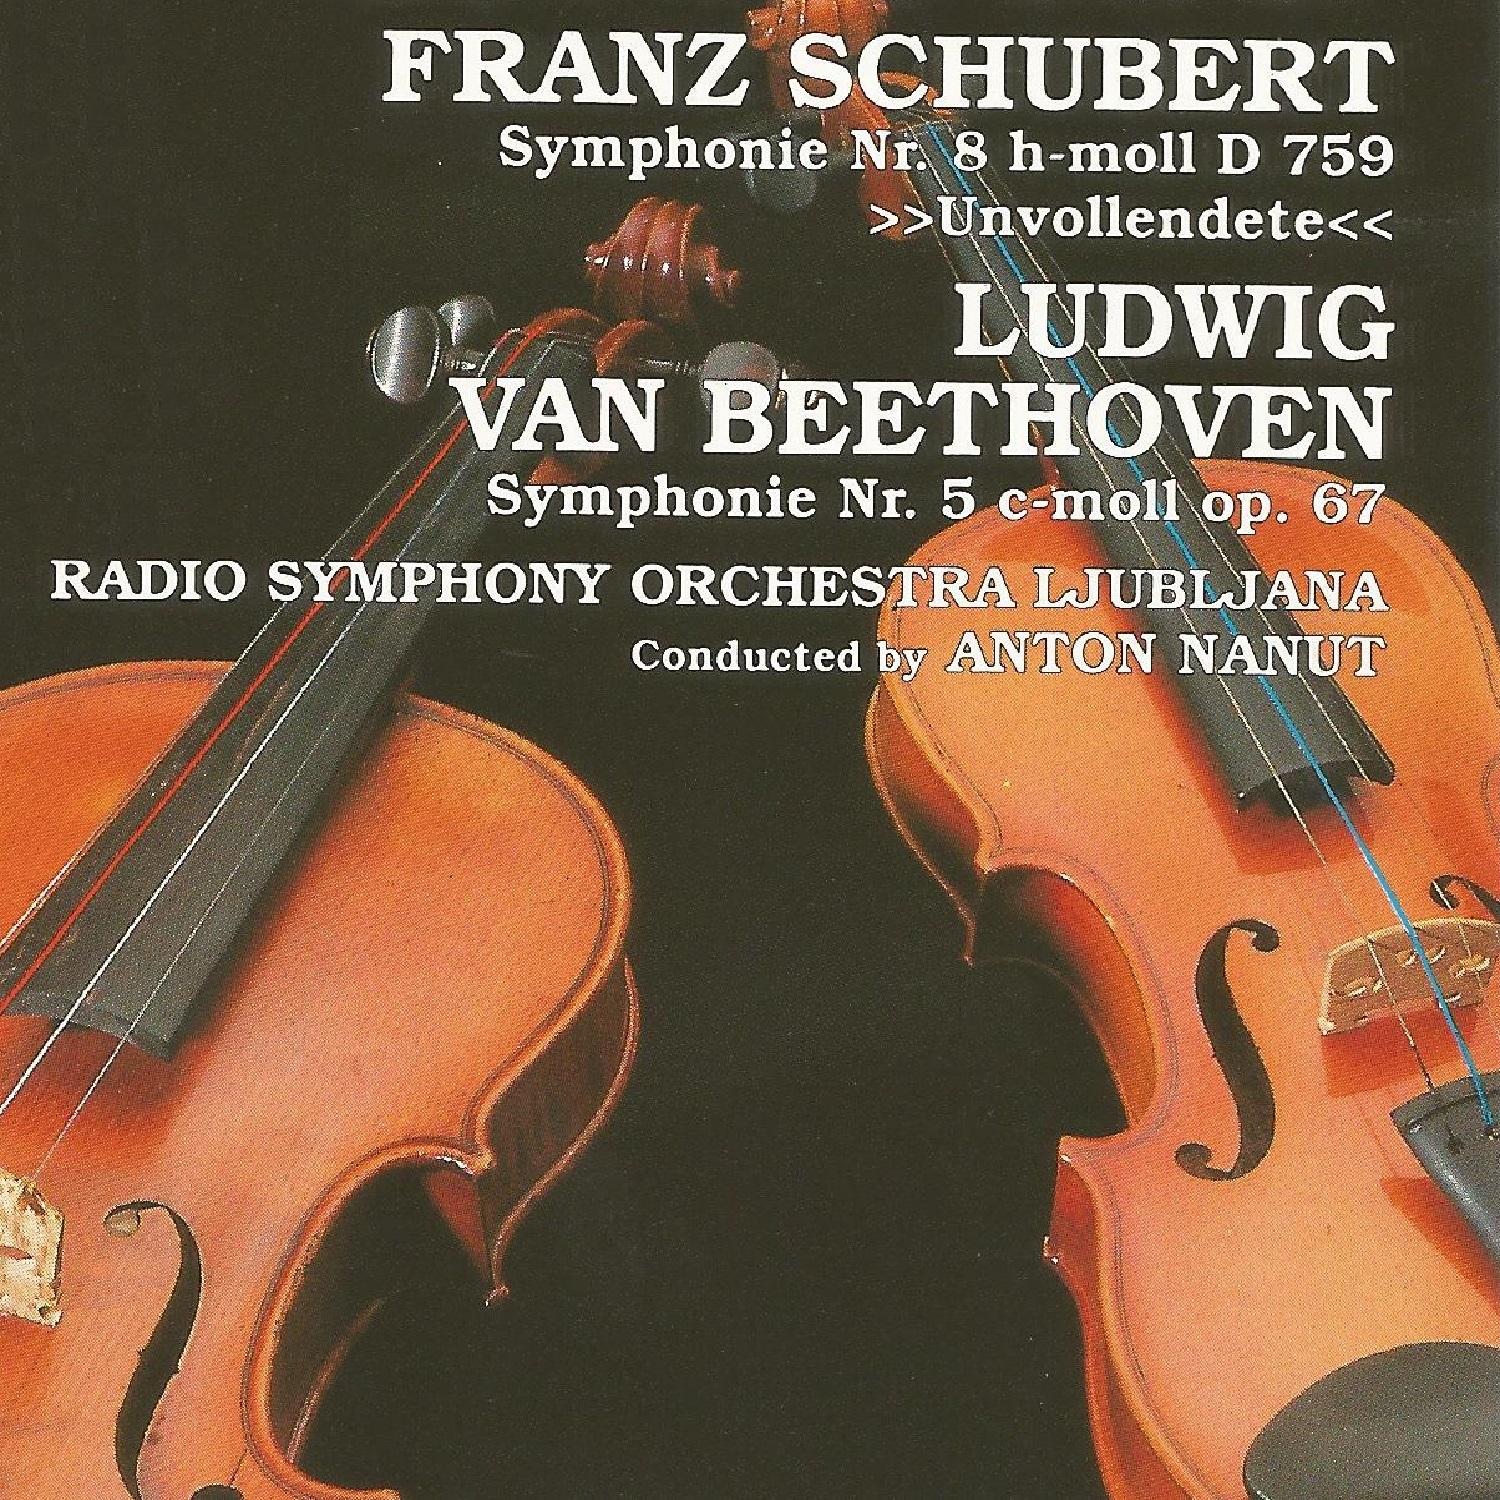 Franz Schubert, Ludwin van Beethoven